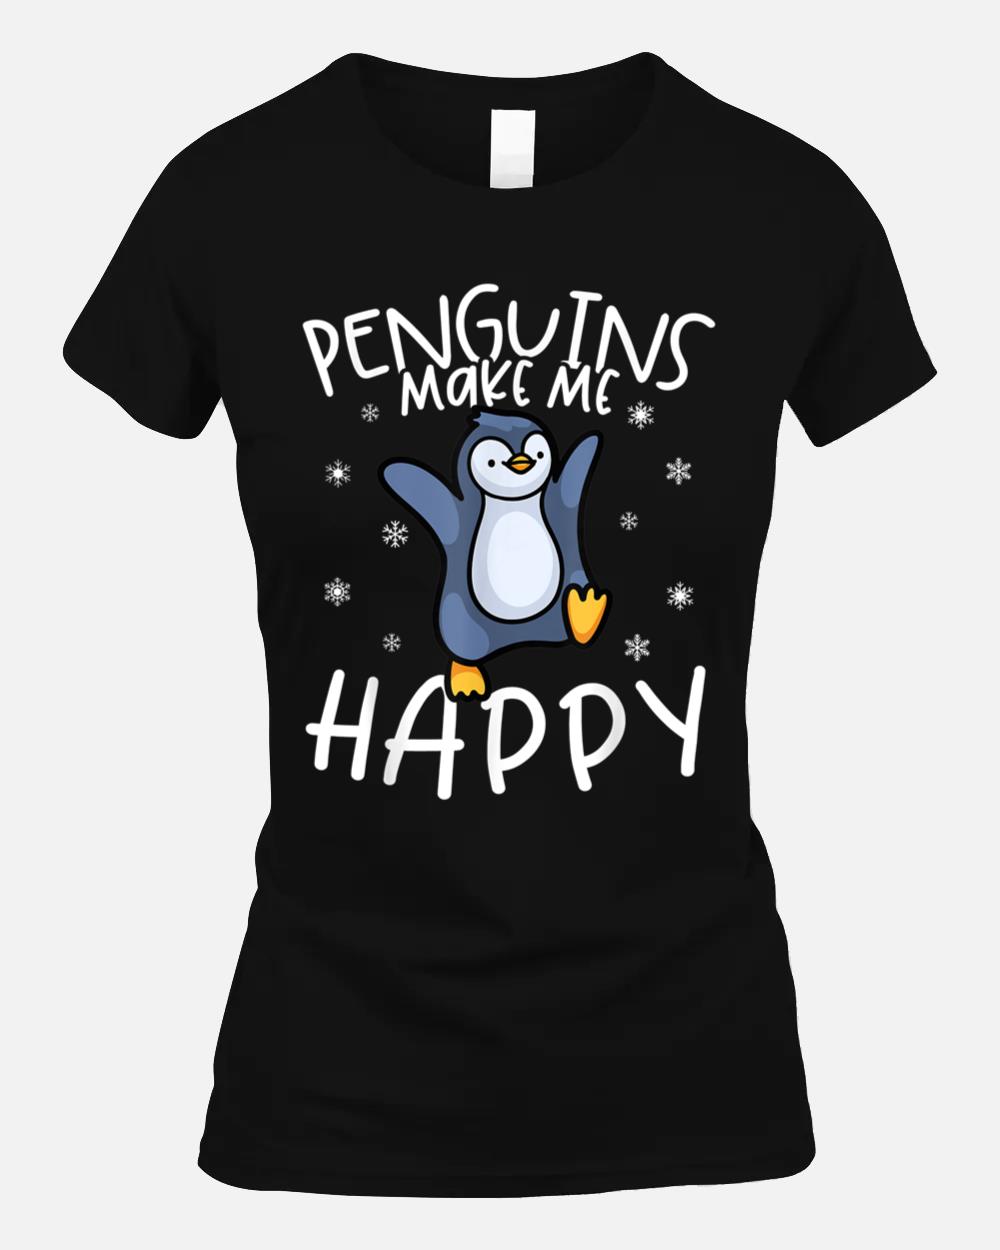 Penguin Tshirt, Penguin Shirt, Penguin Lover Gift, Penguin_1 Unisex T-Shirt